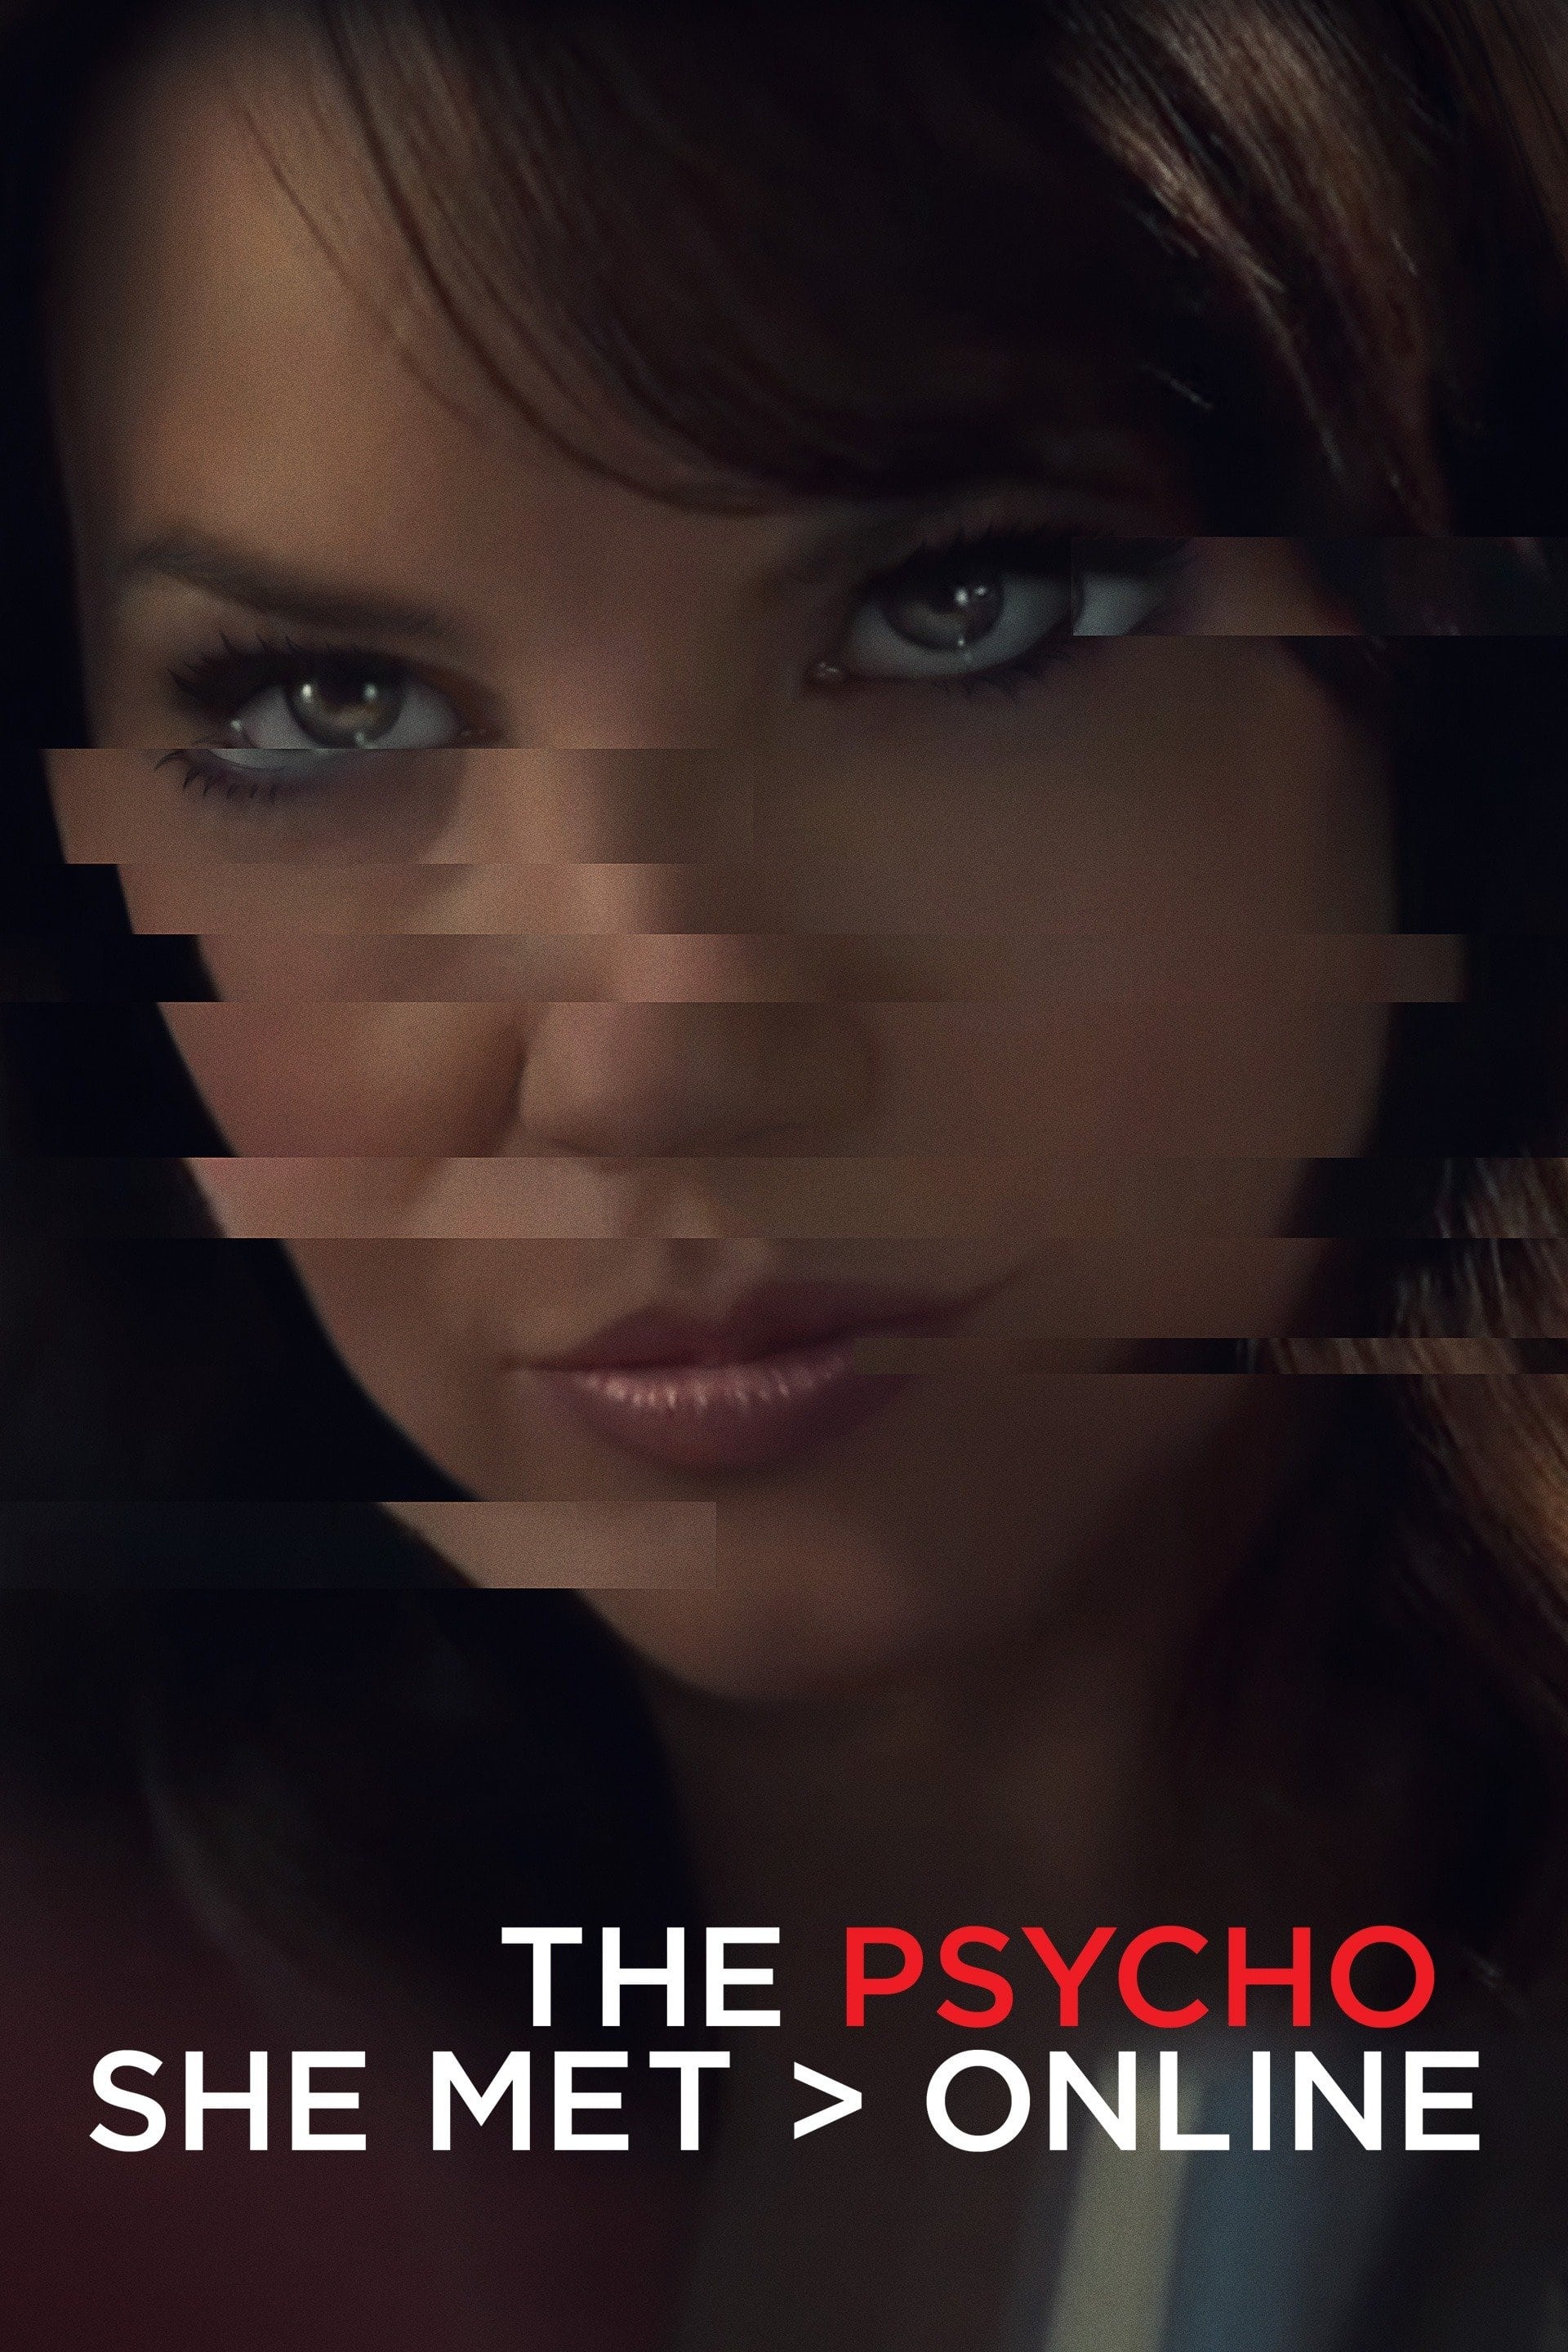 The Psycho She Met Online film